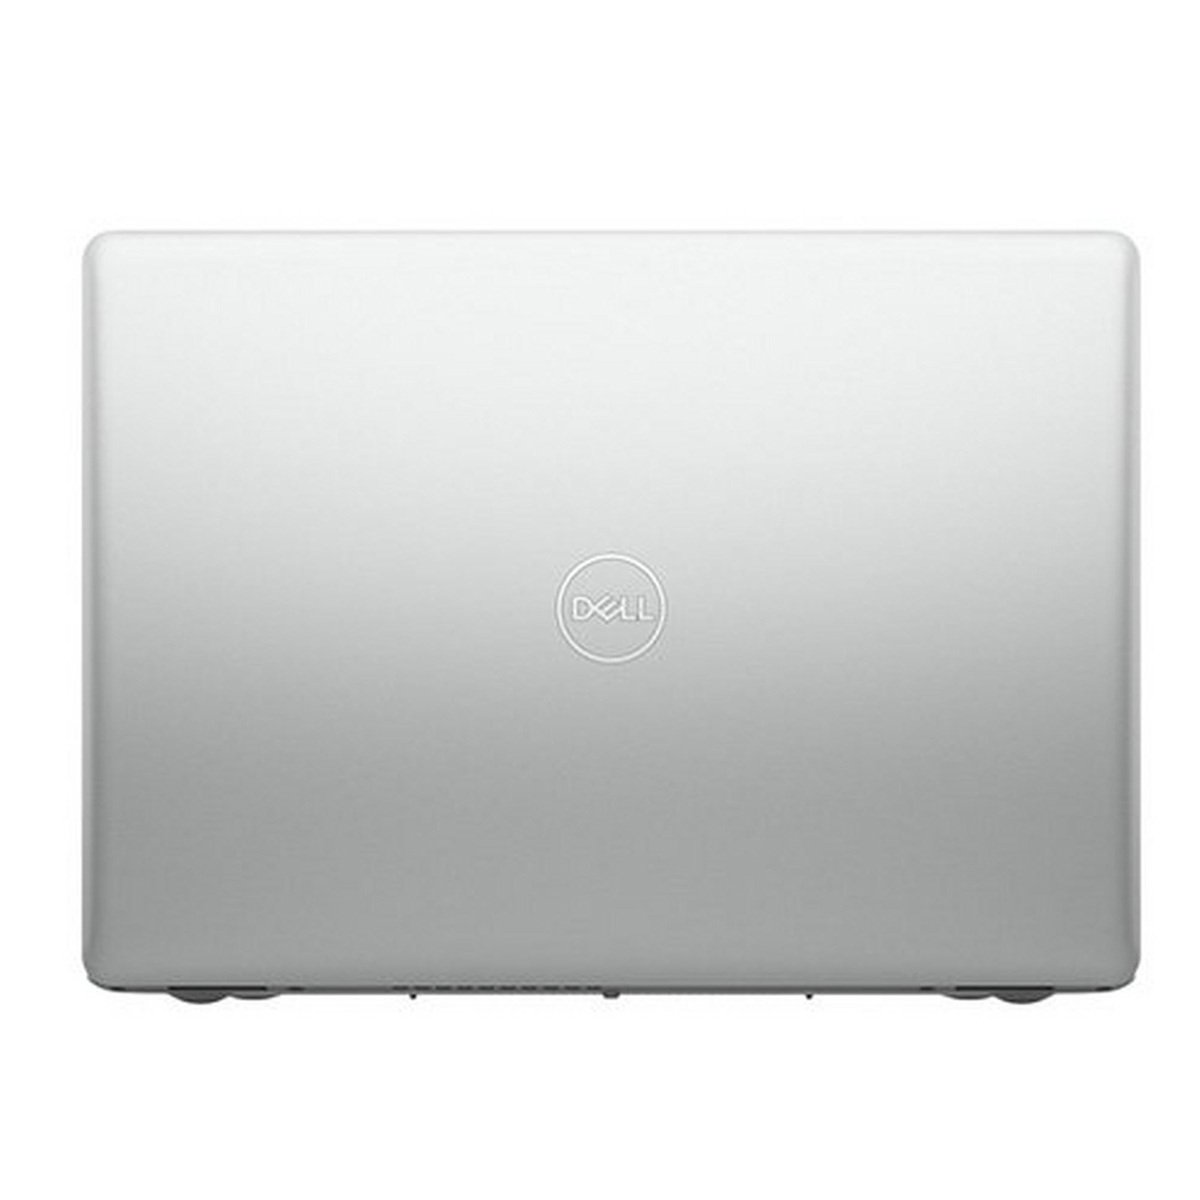 Dell 3493-INS-K0248 Laptop, Core i3, 4GB RAM, 1TB HDD, Intel® HD graphics 620, 14" Full HD Screen, Windows 10, Silver